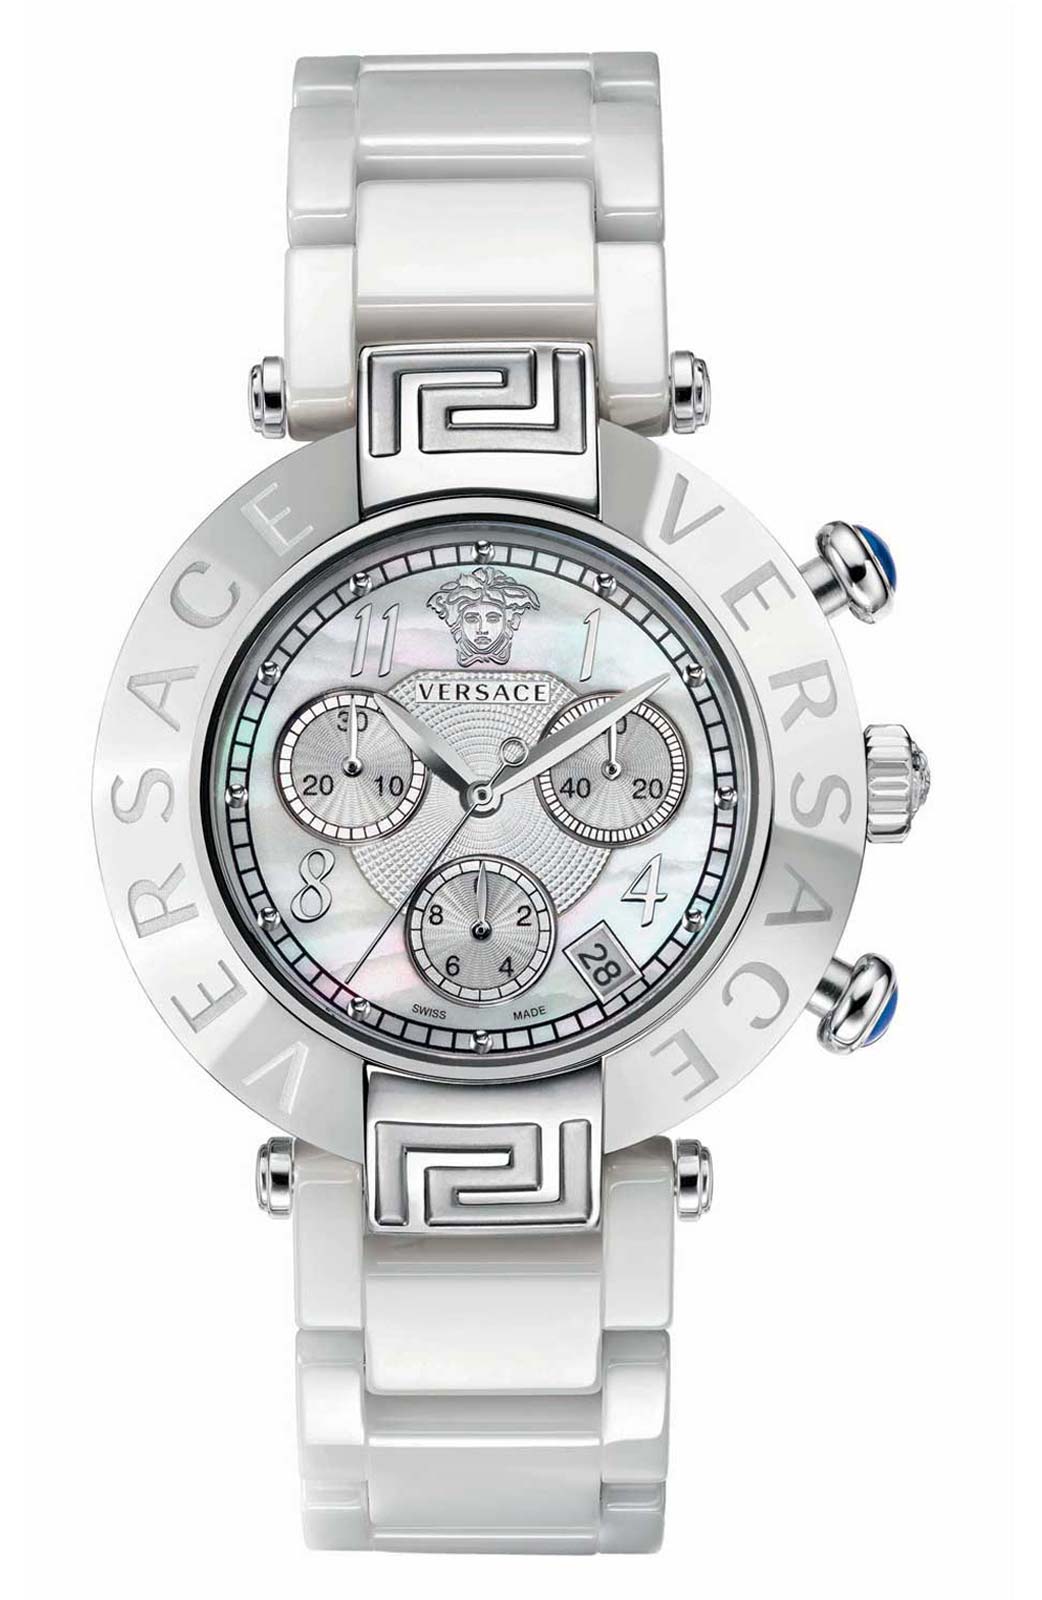 Versace QUARTZ watch 5040D WHITE CERAMIC BRACELET